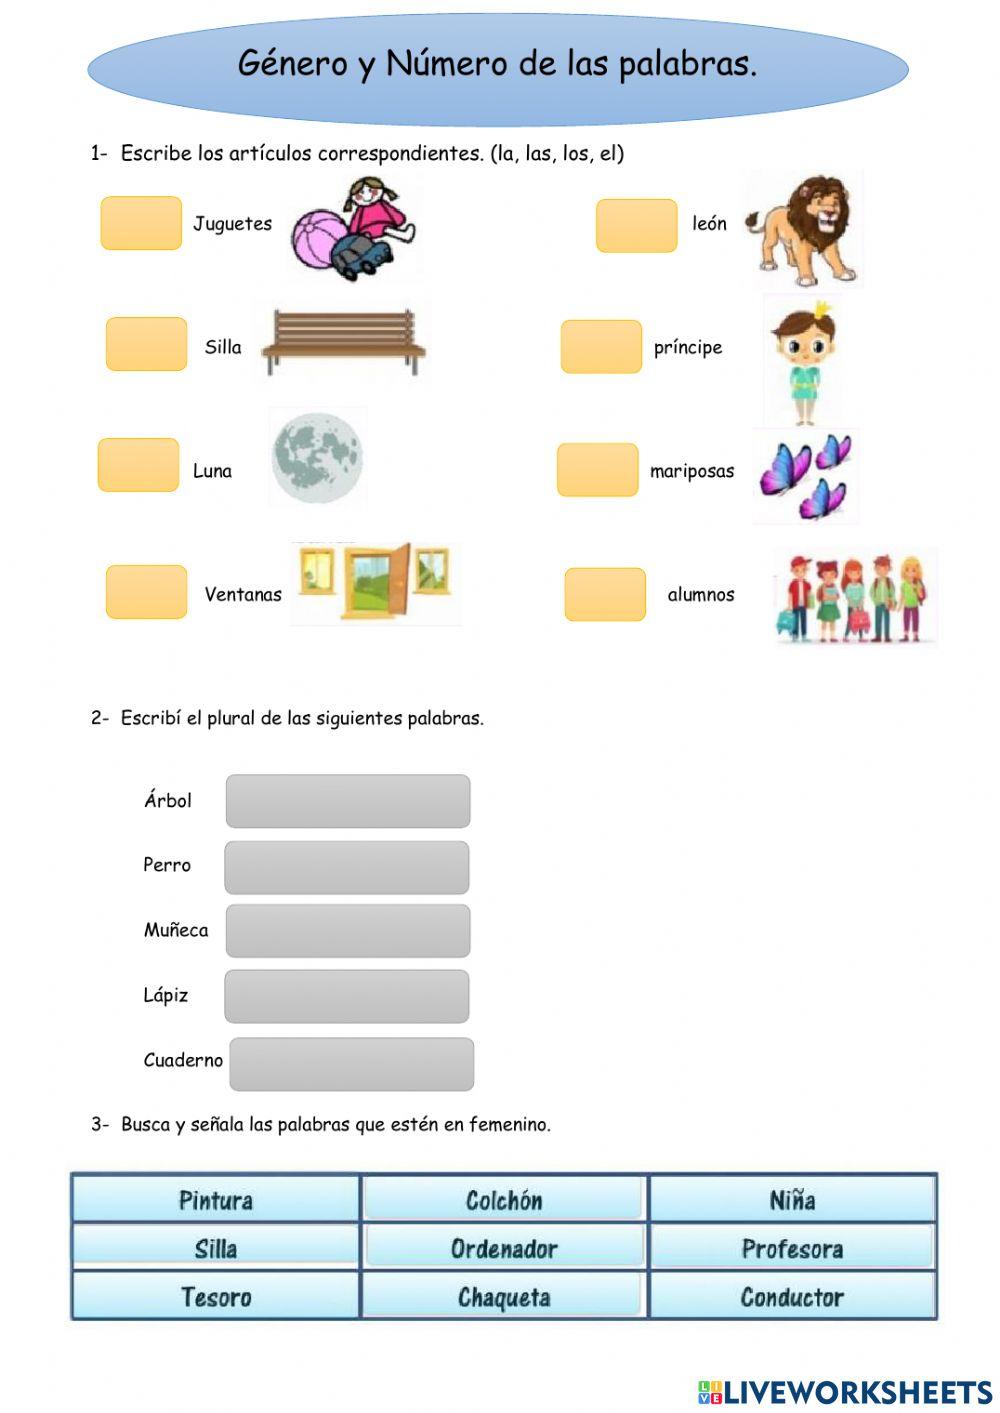 Género y Número interactive worksheet for segundo grado | Live Worksheets